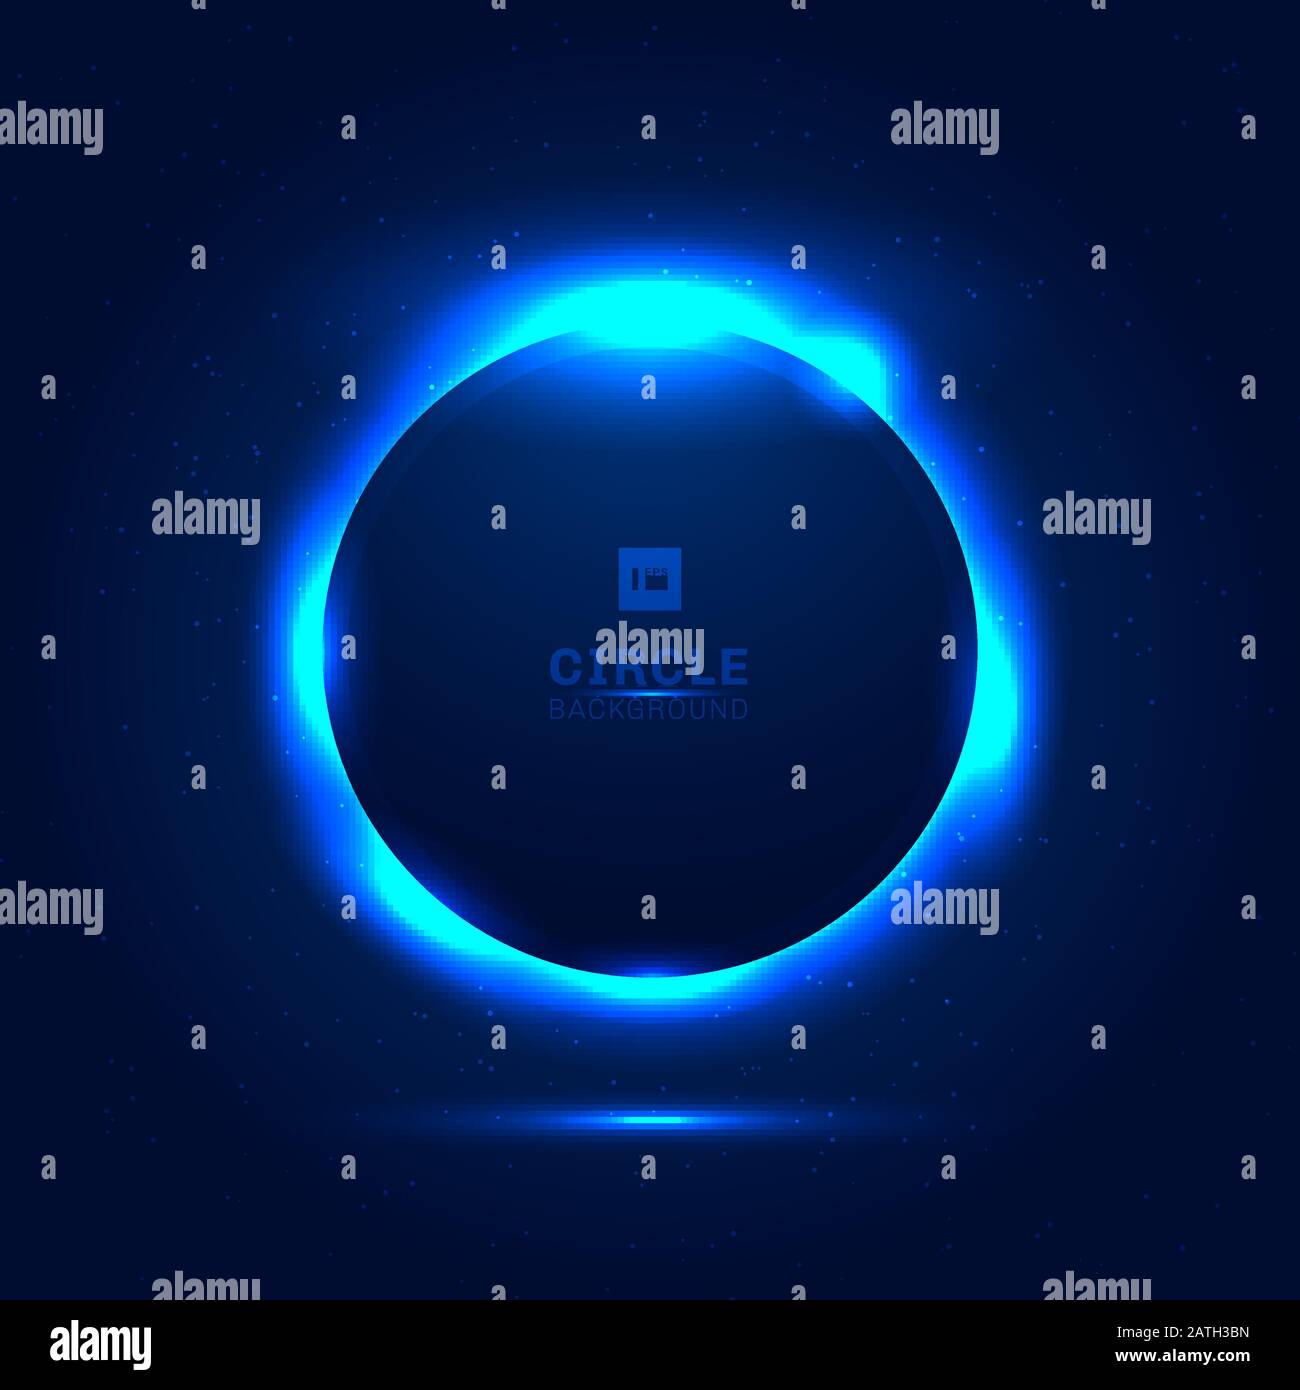 Astratto solare eclisse spazio blu con una stella che brilla da dietro uno spazio di sfondo pianeta per il tuo testo. Effetto di illuminazione circolare geometrica. Vect Illustrazione Vettoriale